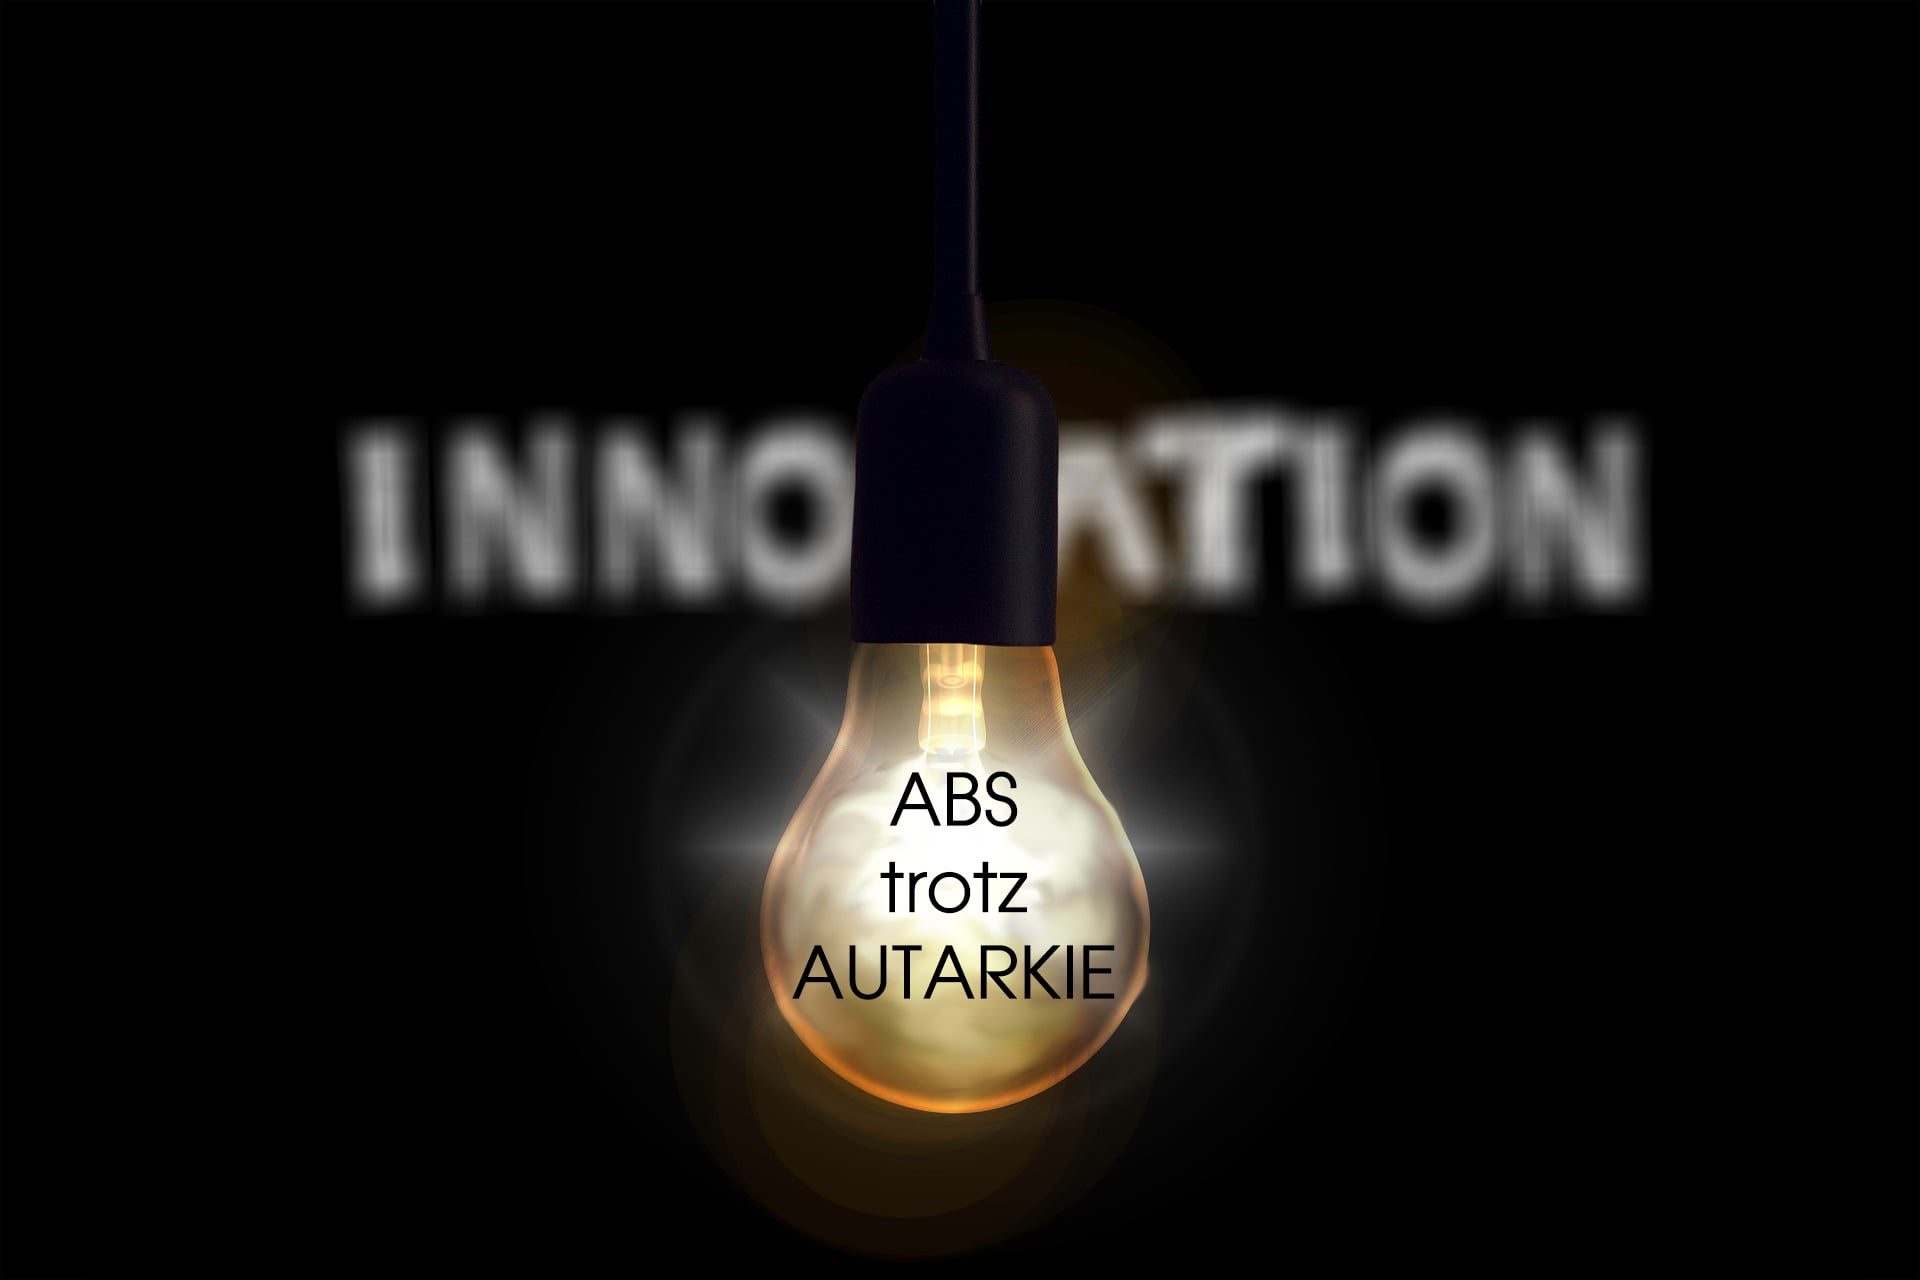 innovation_ABS_trotz_Autarkie-min